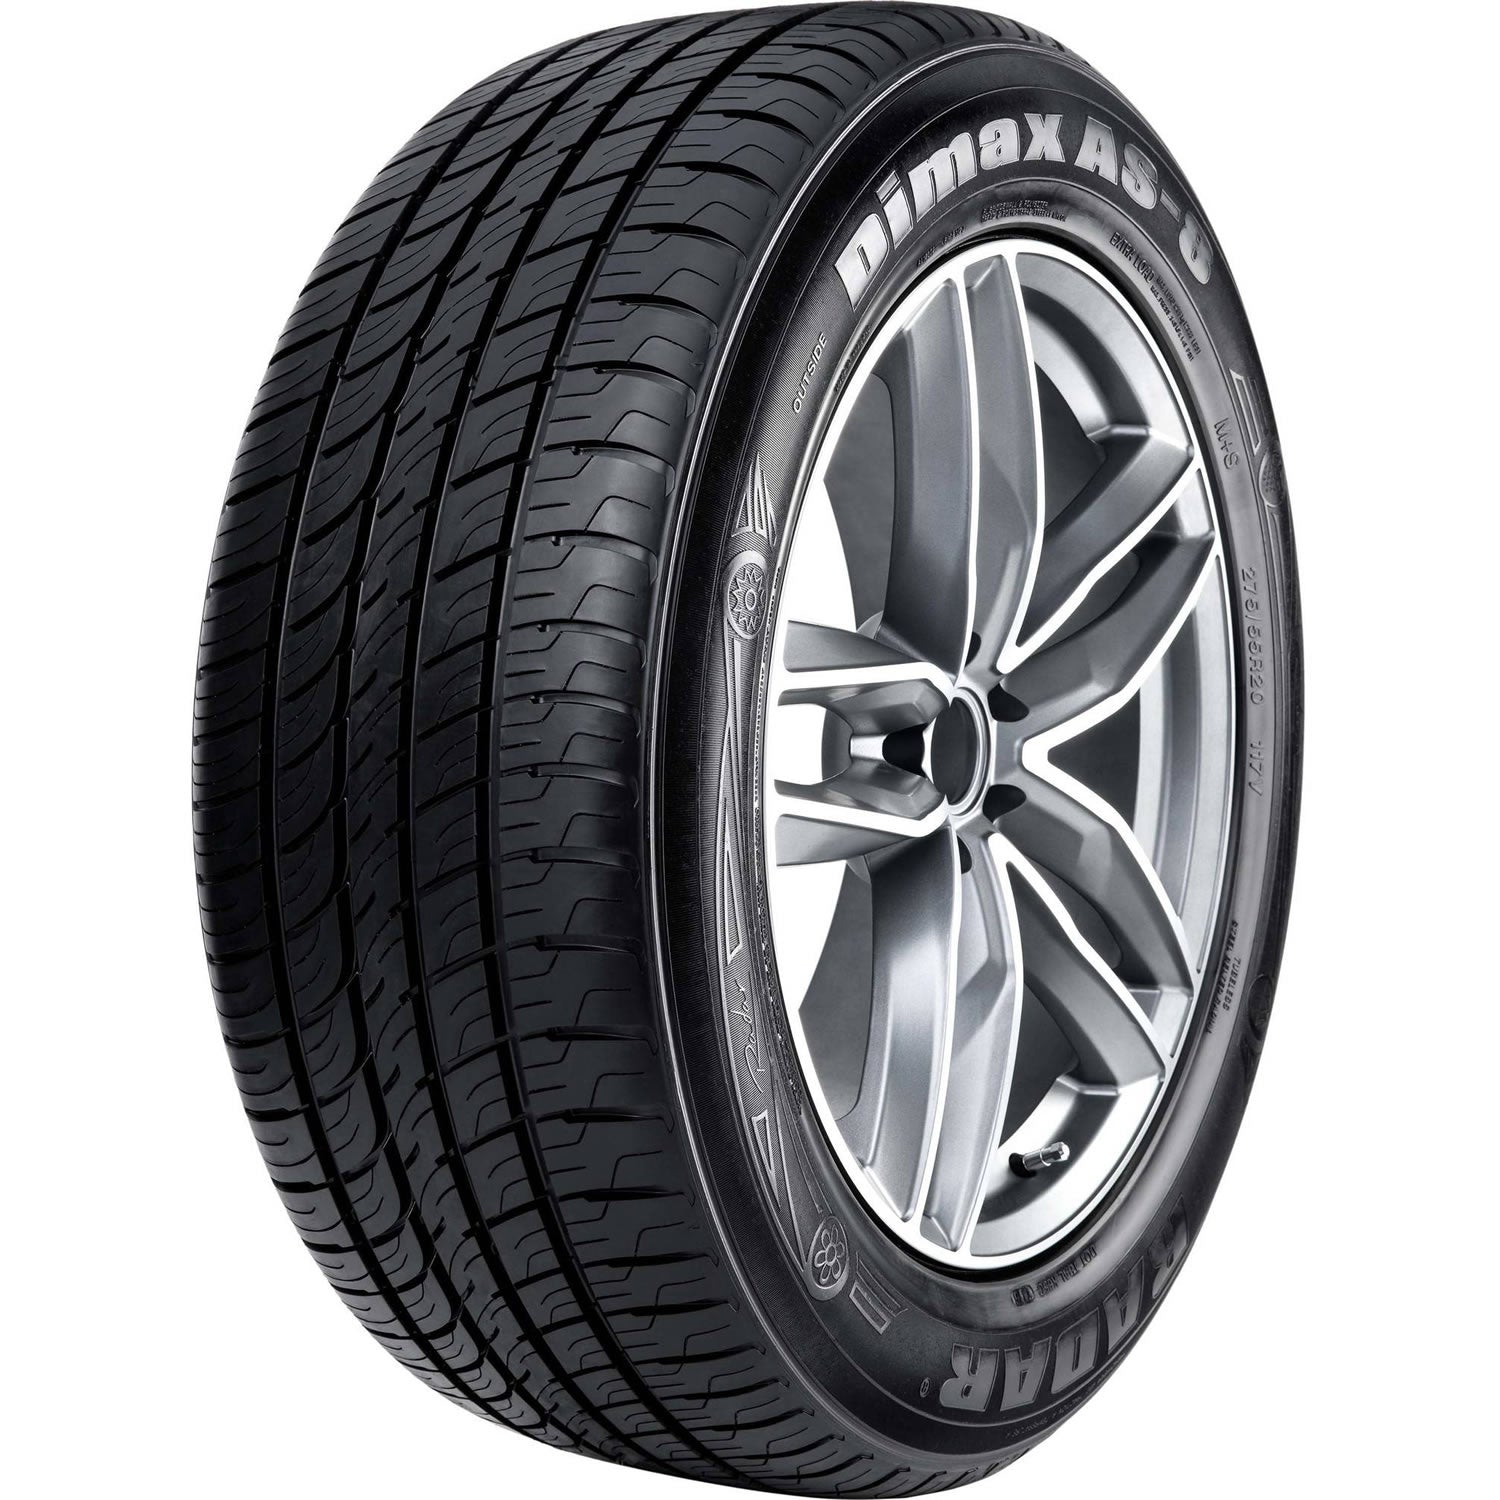 RADAR DIMAX AS-8 275/35R20 (27.6X10.8R 20) Tires